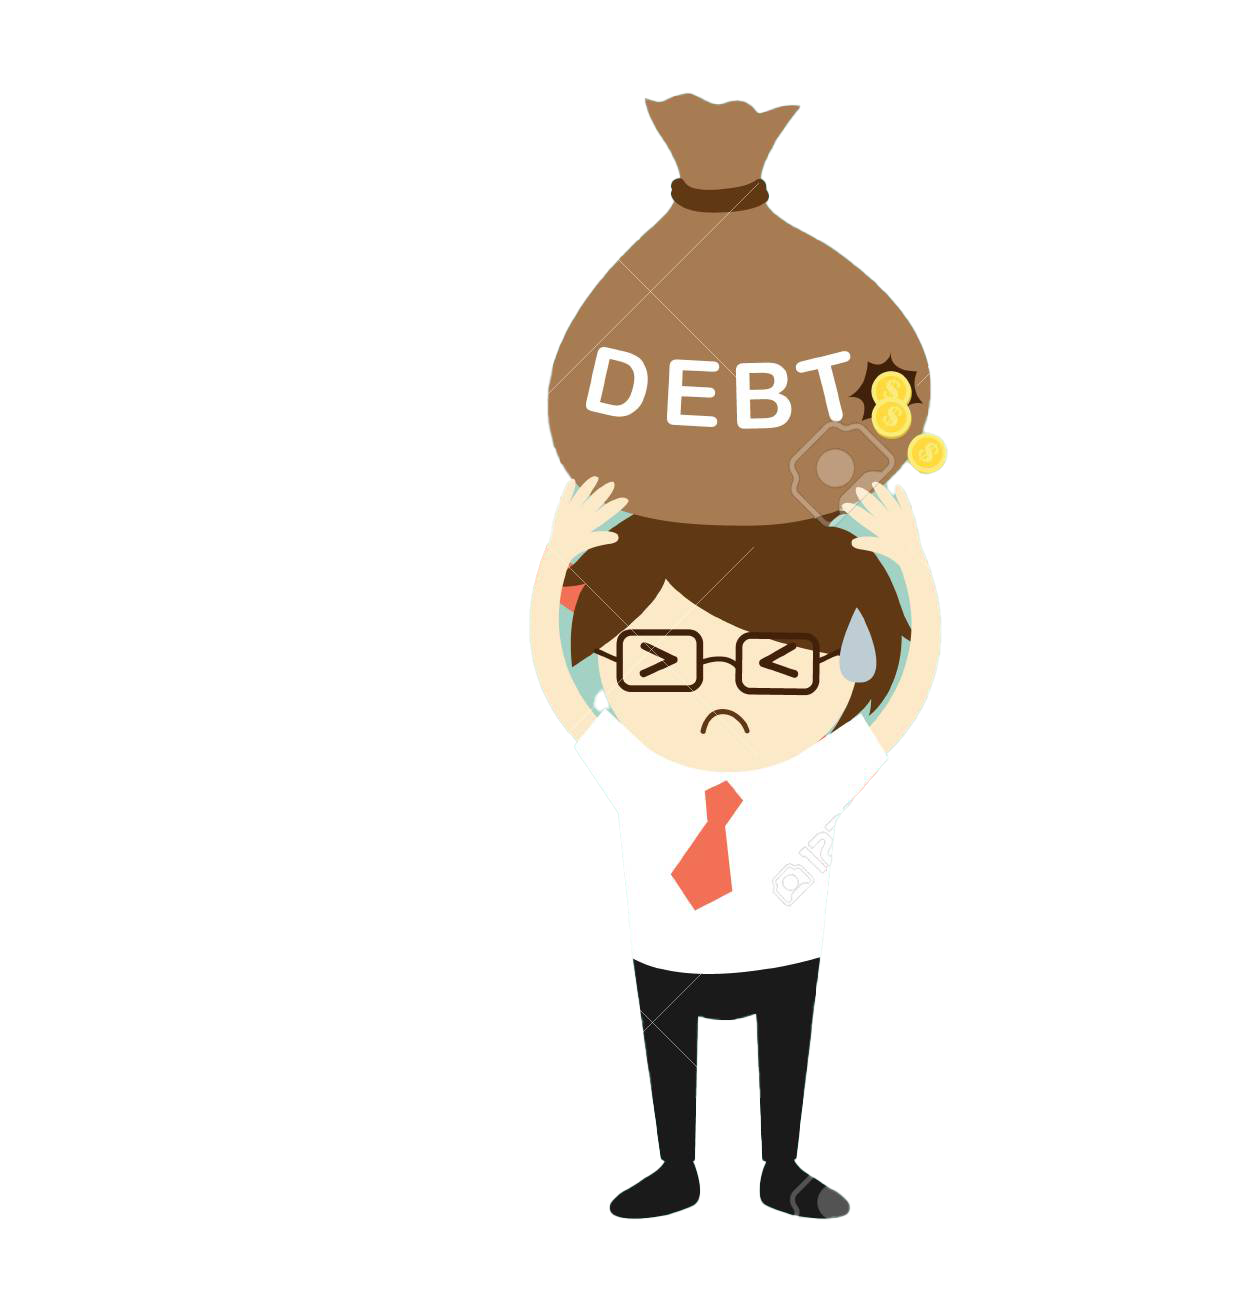 Imagen Transparente de la deuda